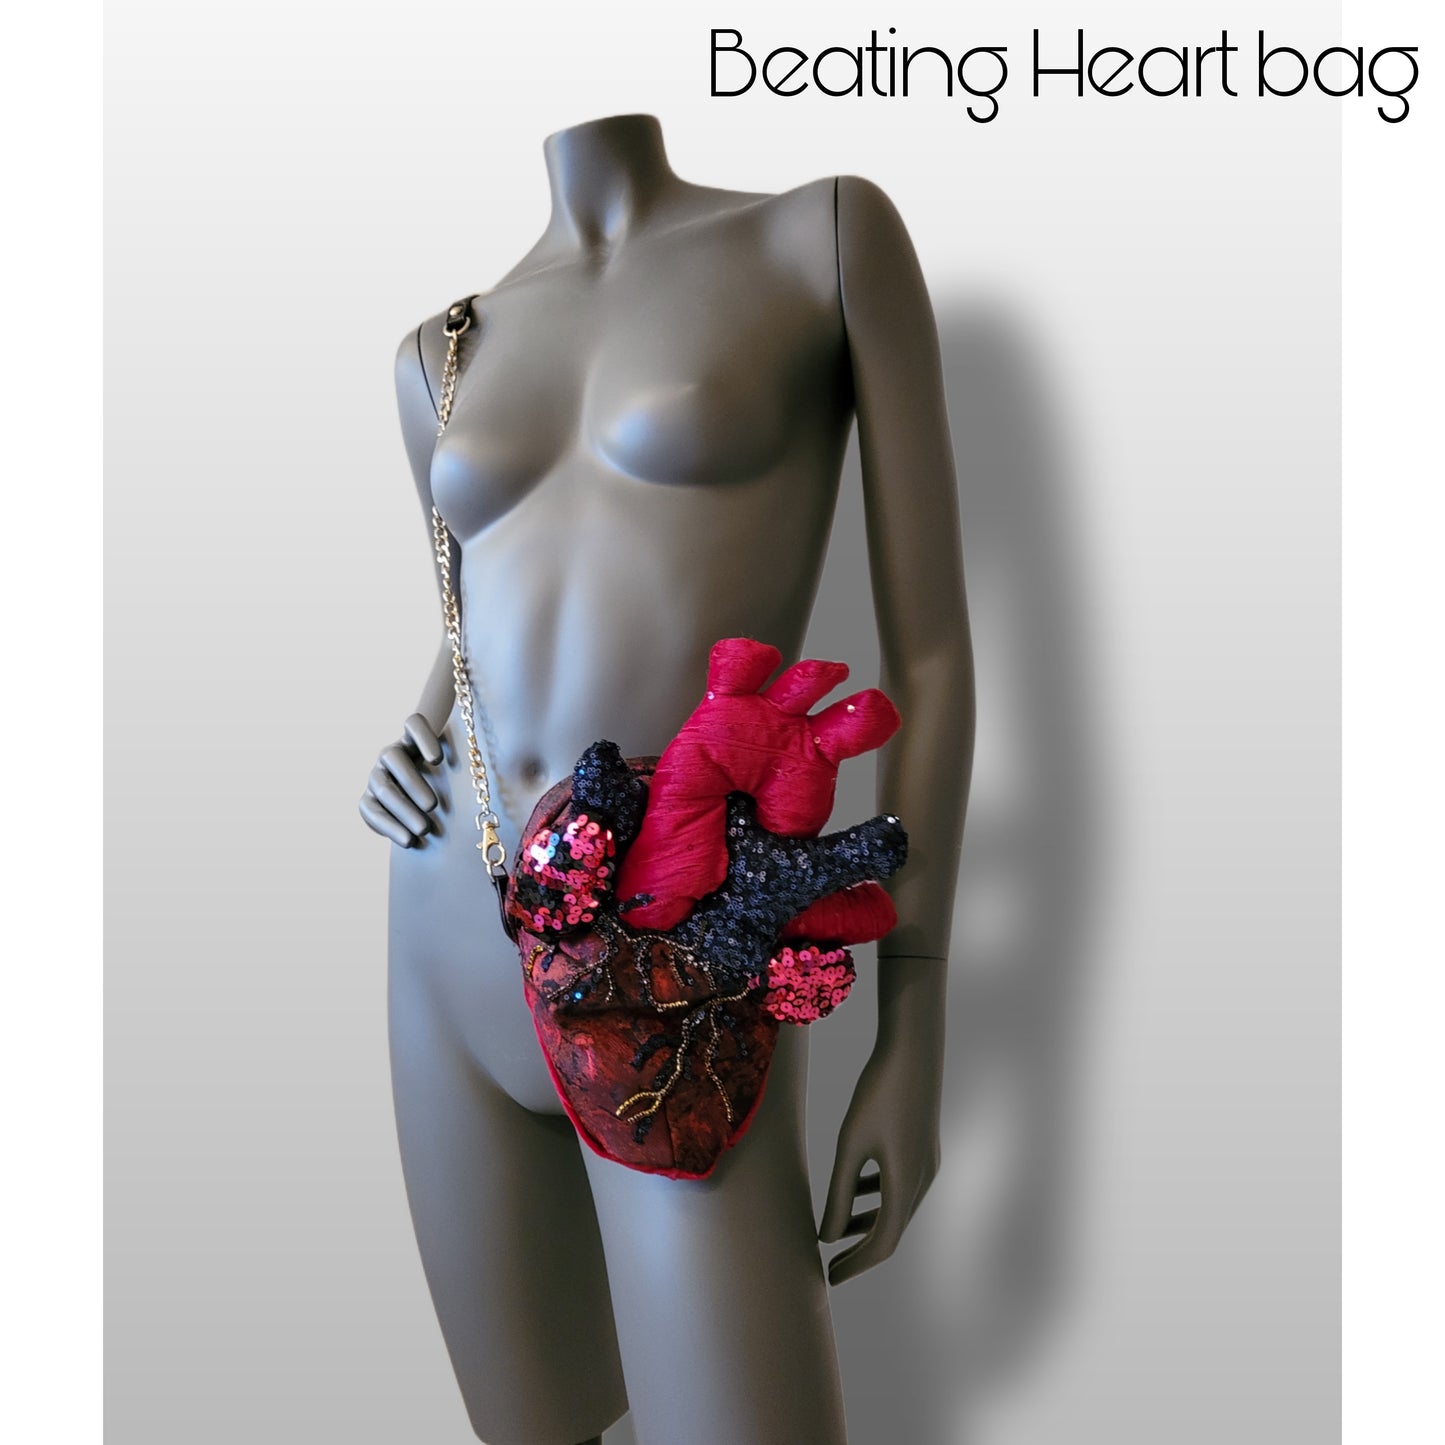 The Bleeding Heart bag